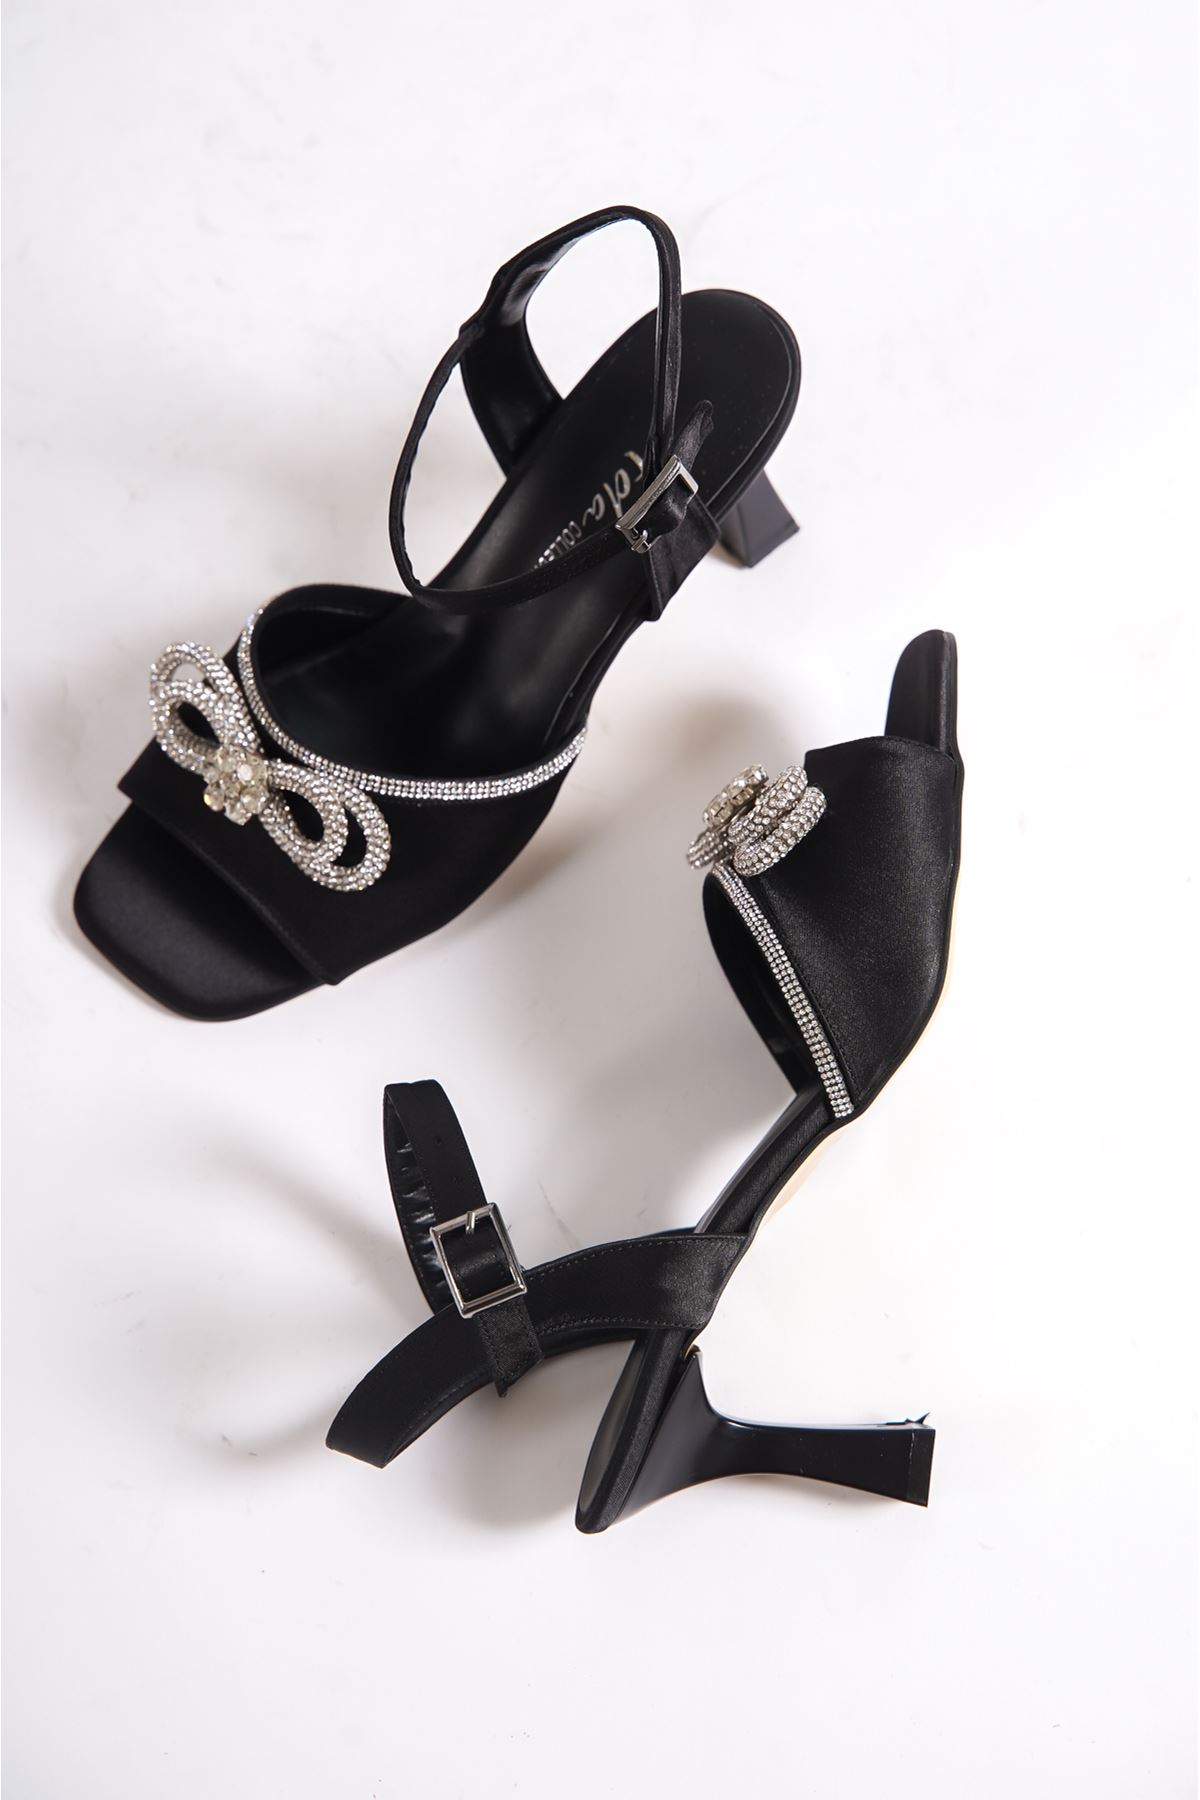 Barrie Siyah Saten Taşlı Topuklu Kadın Ayakkabı